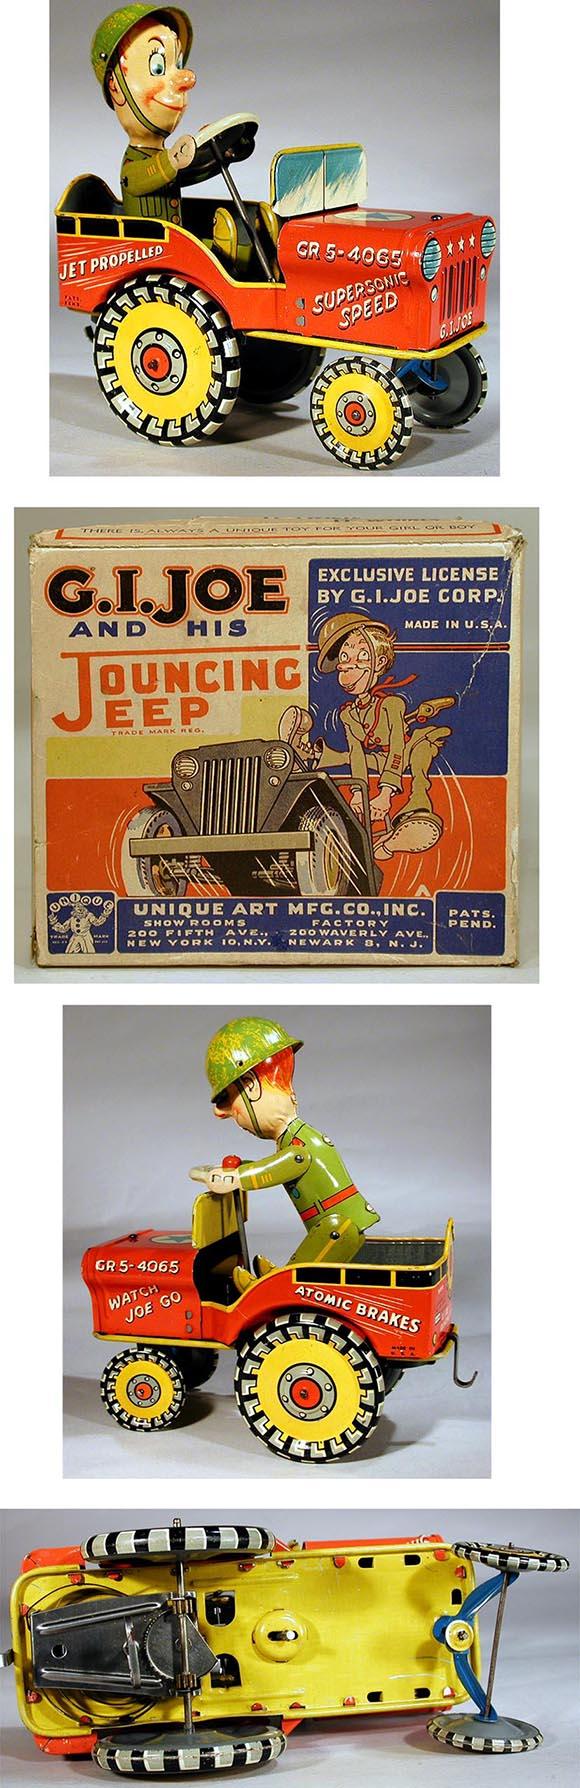 1946 Unique Art, G.I. Joe & His Jouncing Jeep in Original Box